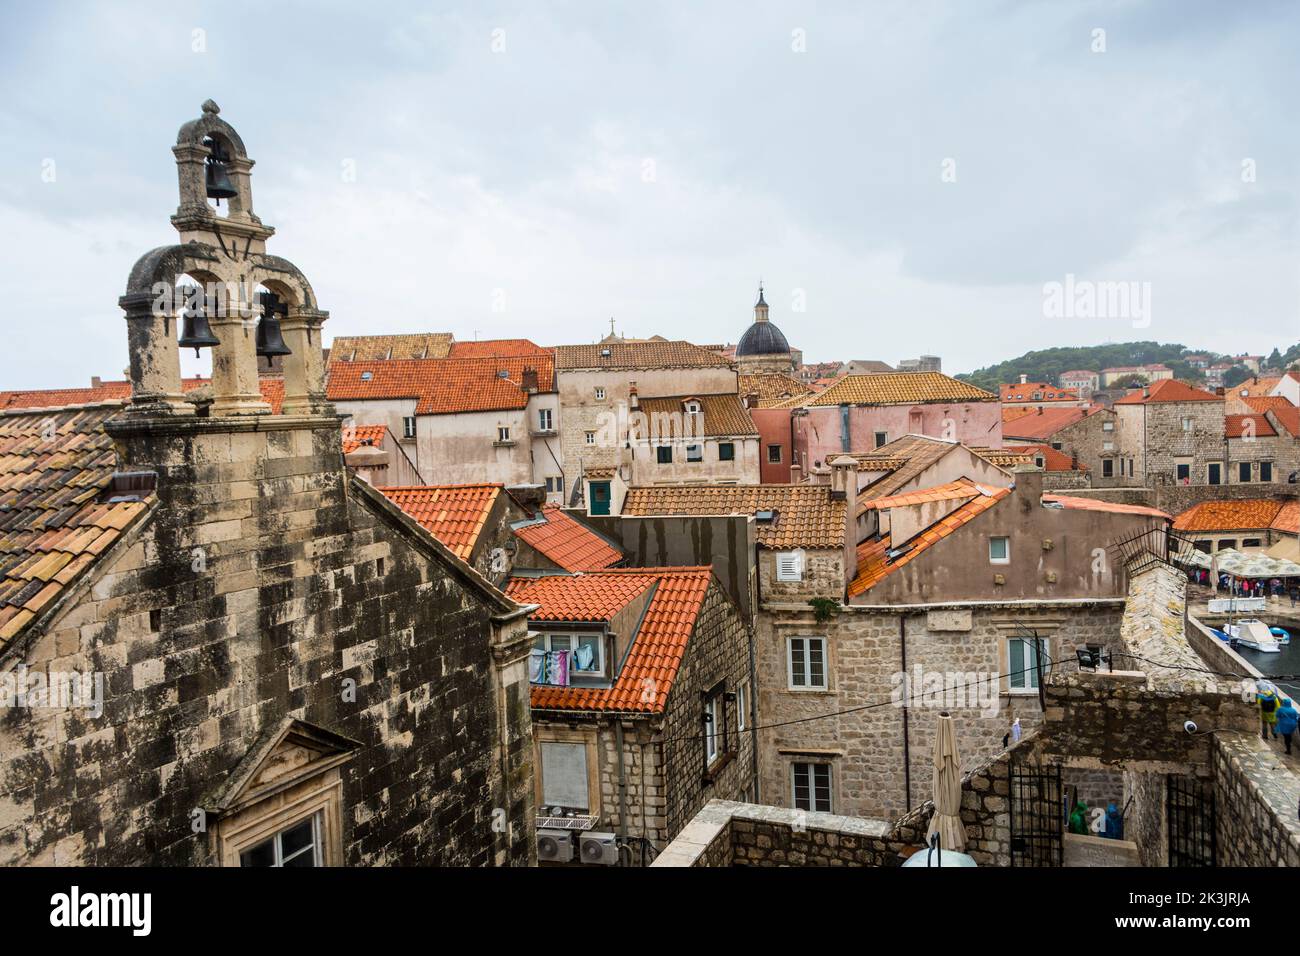 Vue d'ensemble de la vieille ville fortifiée de Dubrovnik, Croatie. Banque D'Images